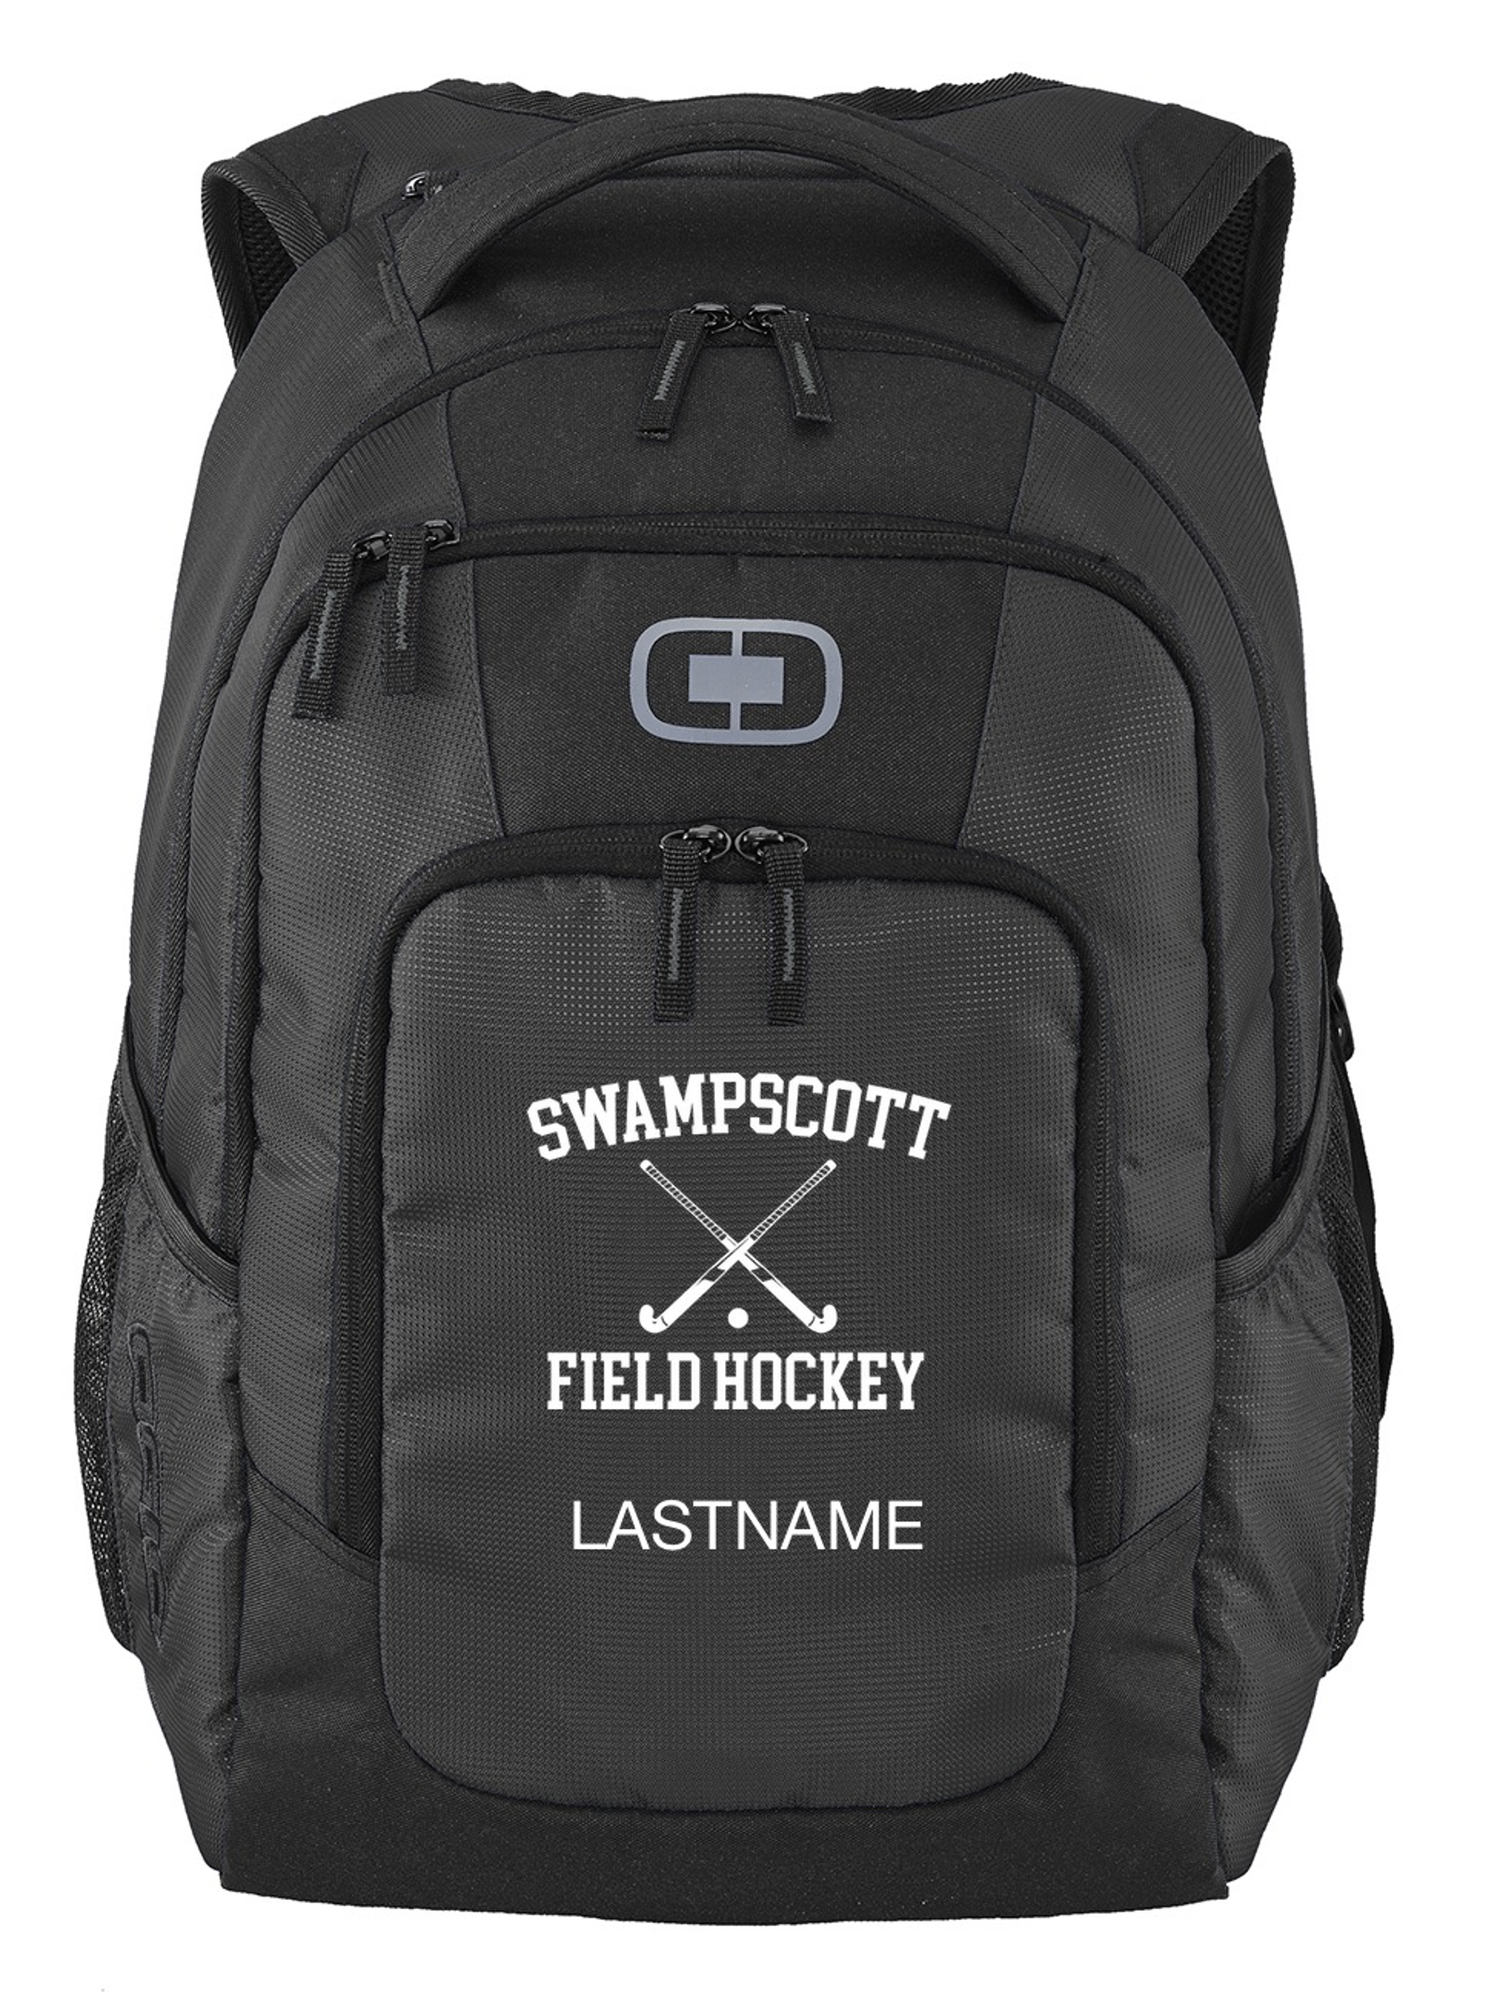 Swampscott Field Hockey Backpack